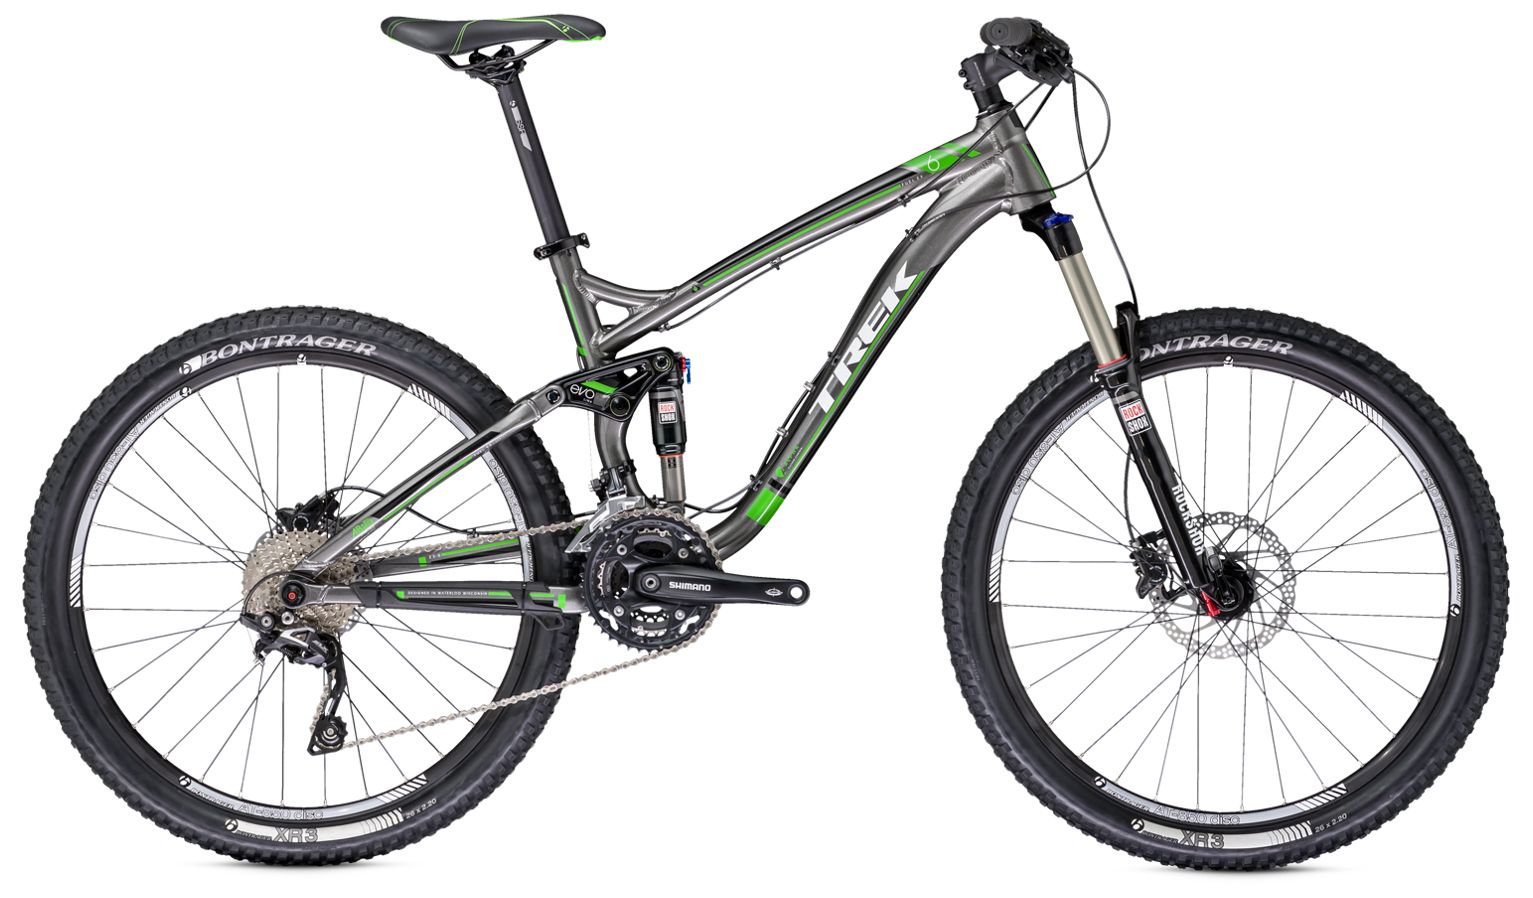  Отзывы о Горном велосипеде Trek Fuel EX 6 26 2014